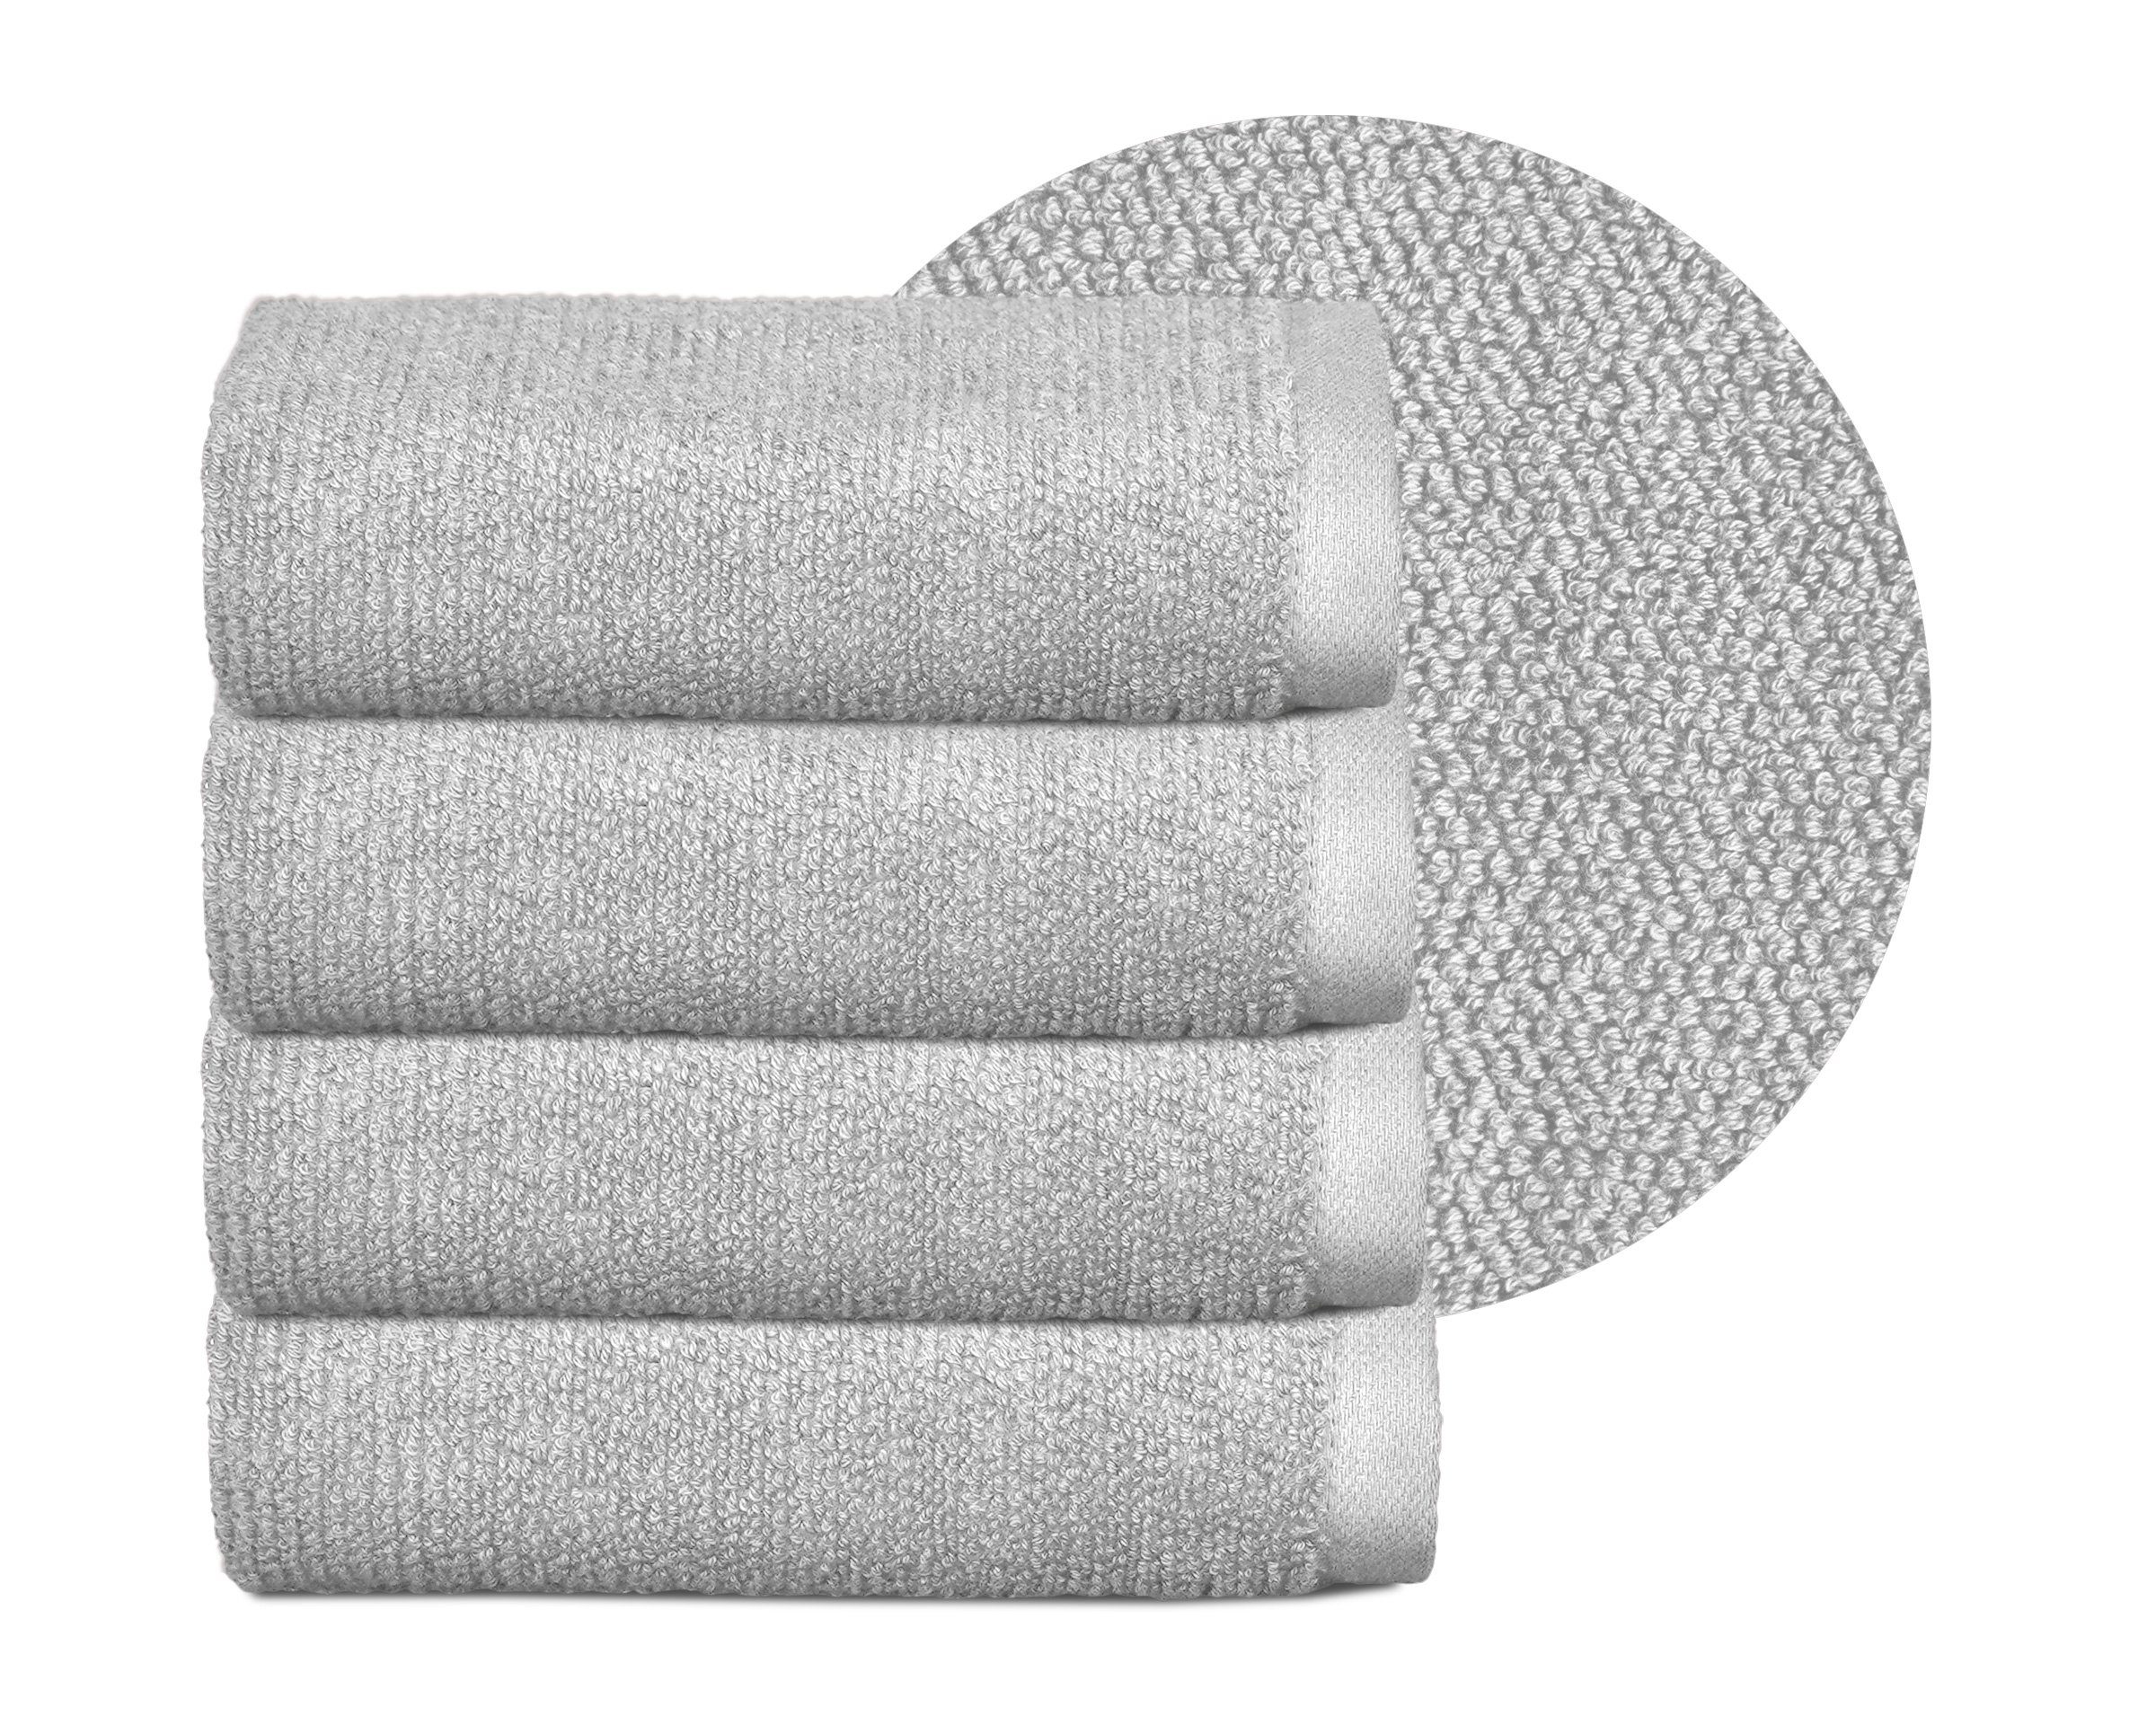 Beautex Handtuch Set Handtuch Set, Made in Europe, Frottier, (Multischlaufen-Optik, Frottier Premium Set aus 100% Baumwolle 550g/m) Hellgrau